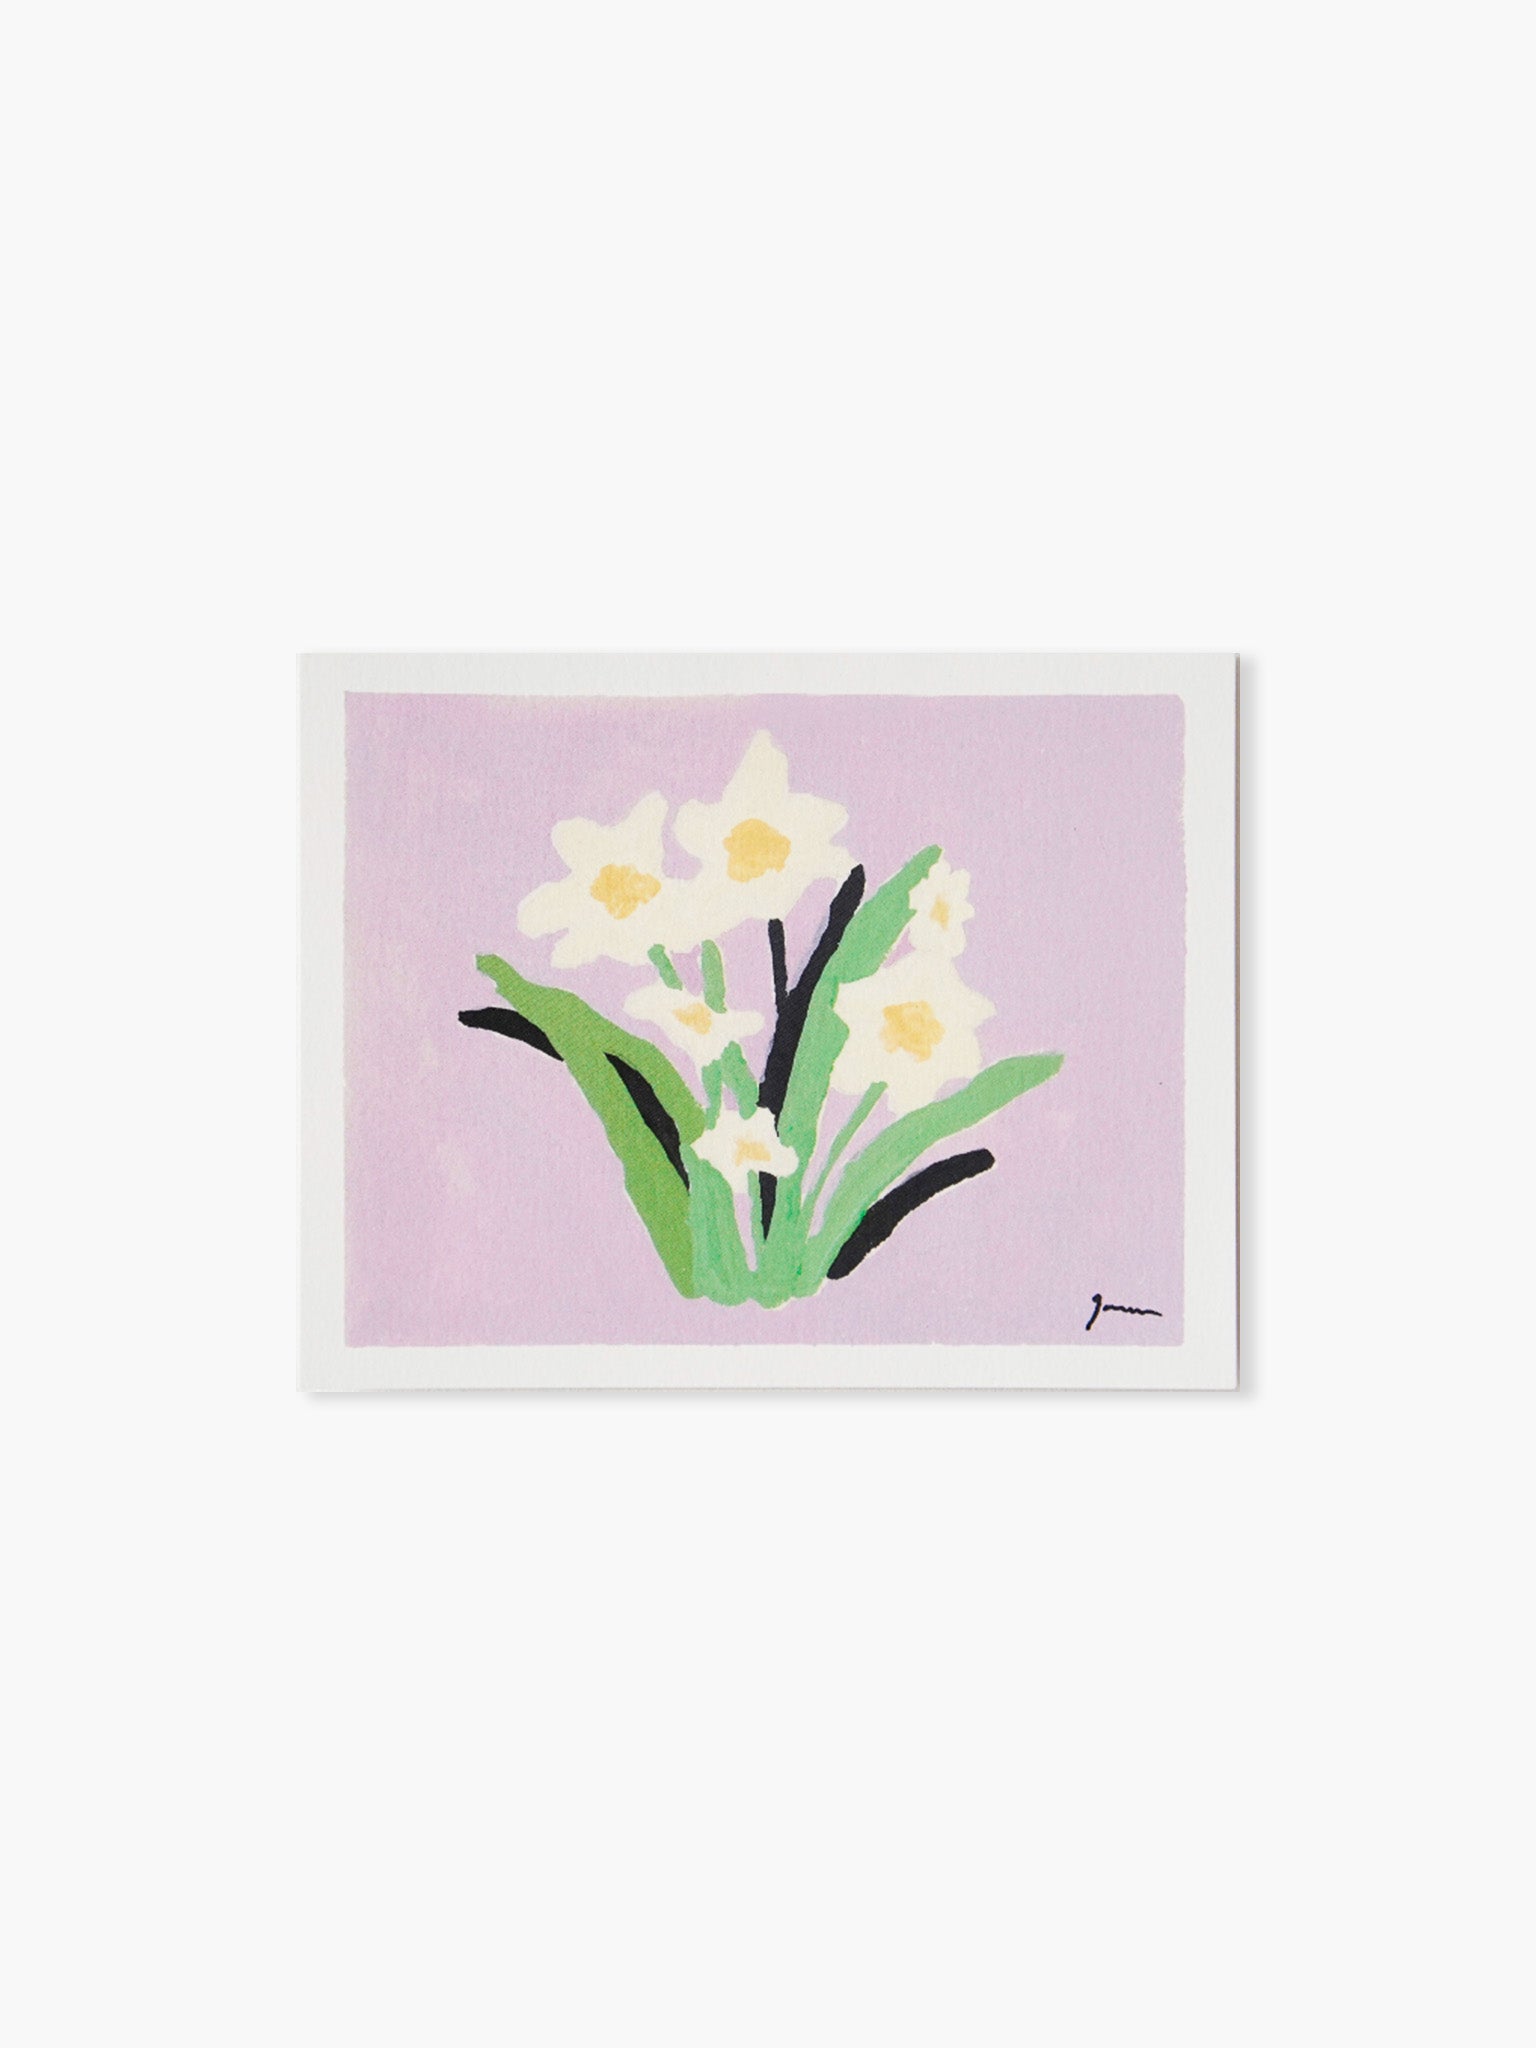 Daffodil Postcard by grumsarah